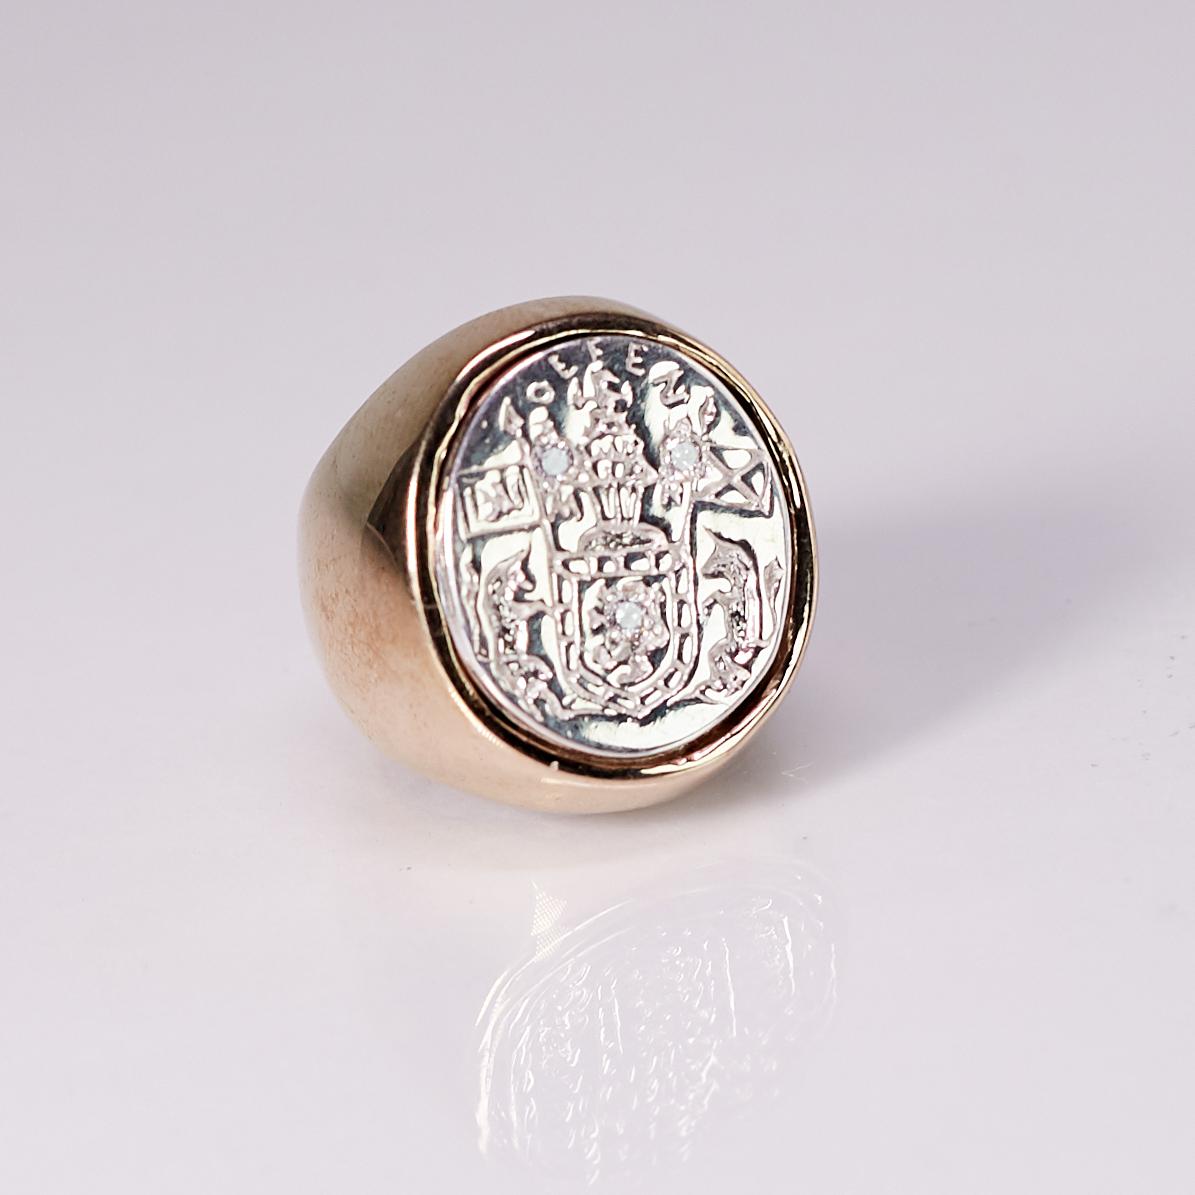 Bague chevalière en argent sterling bronze avec écusson en diamant blanc J DAUPHIN peut être portée par des femmes ou des hommes.

Inspiré de la bague de la reine Marie d'Écosse. Bague sigillaire en or ; gravée ; épaules ornées de fleurs et de